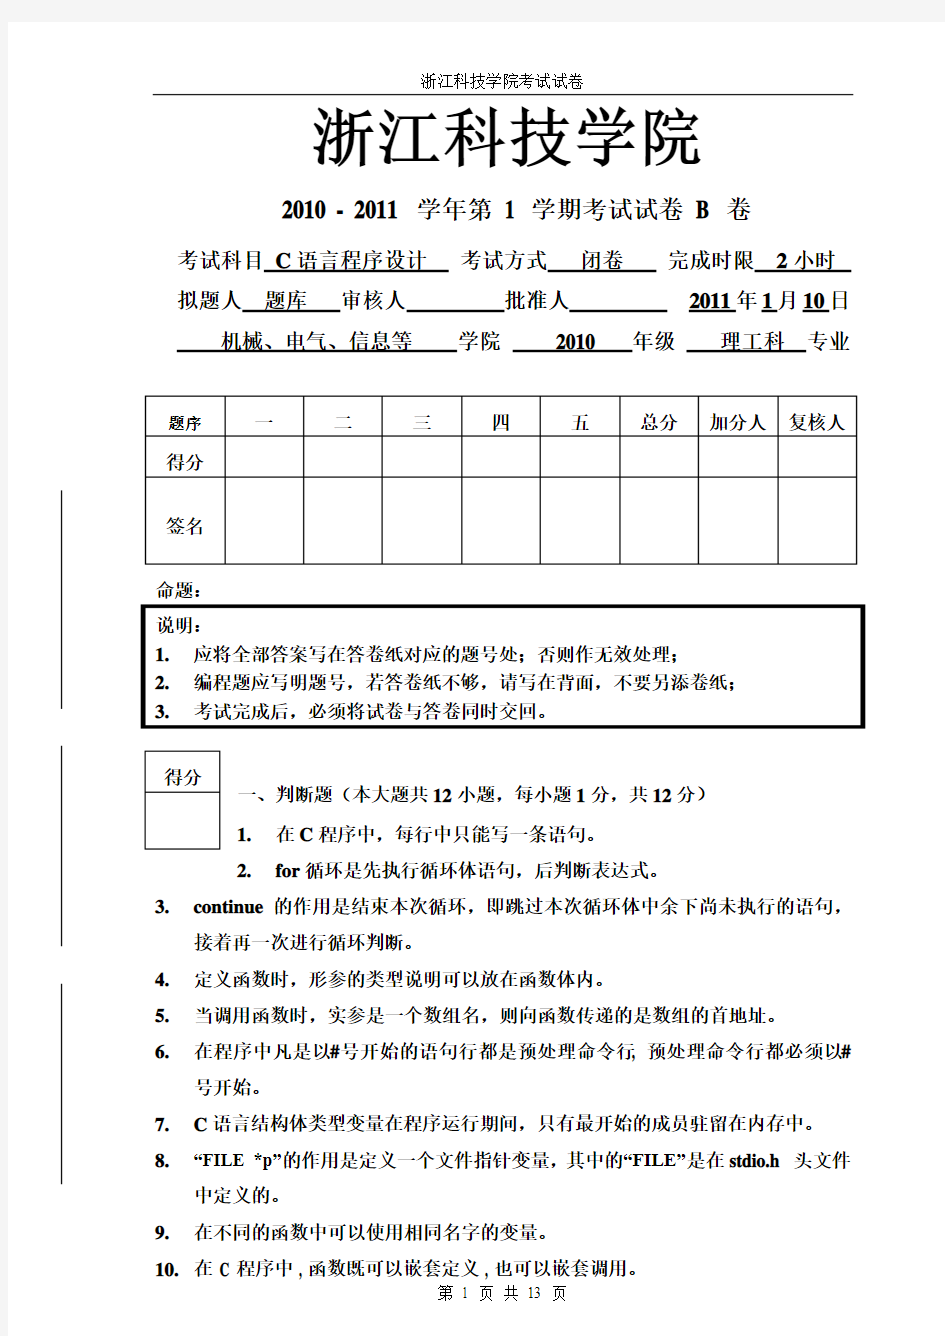 浙江科技学院 C语言(2010-2011-1)试卷-2